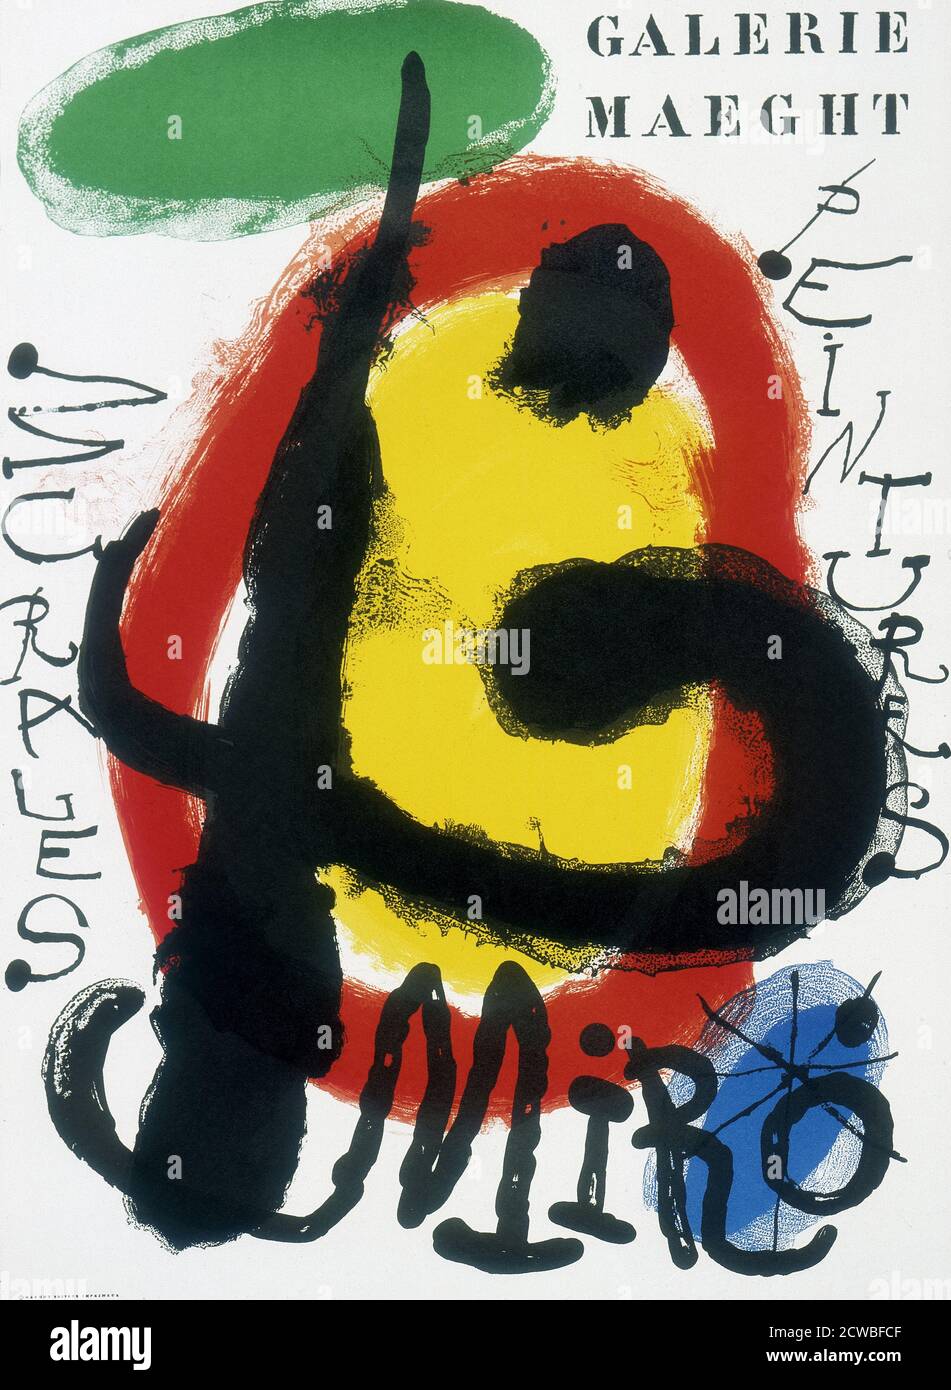 Galerie Maeght, affiche d'exposition de l'artiste espagnole Joan Miro (1893 - 1983) peintre, sculpteur et céramiste né à Barcelone. 1961 Banque D'Images